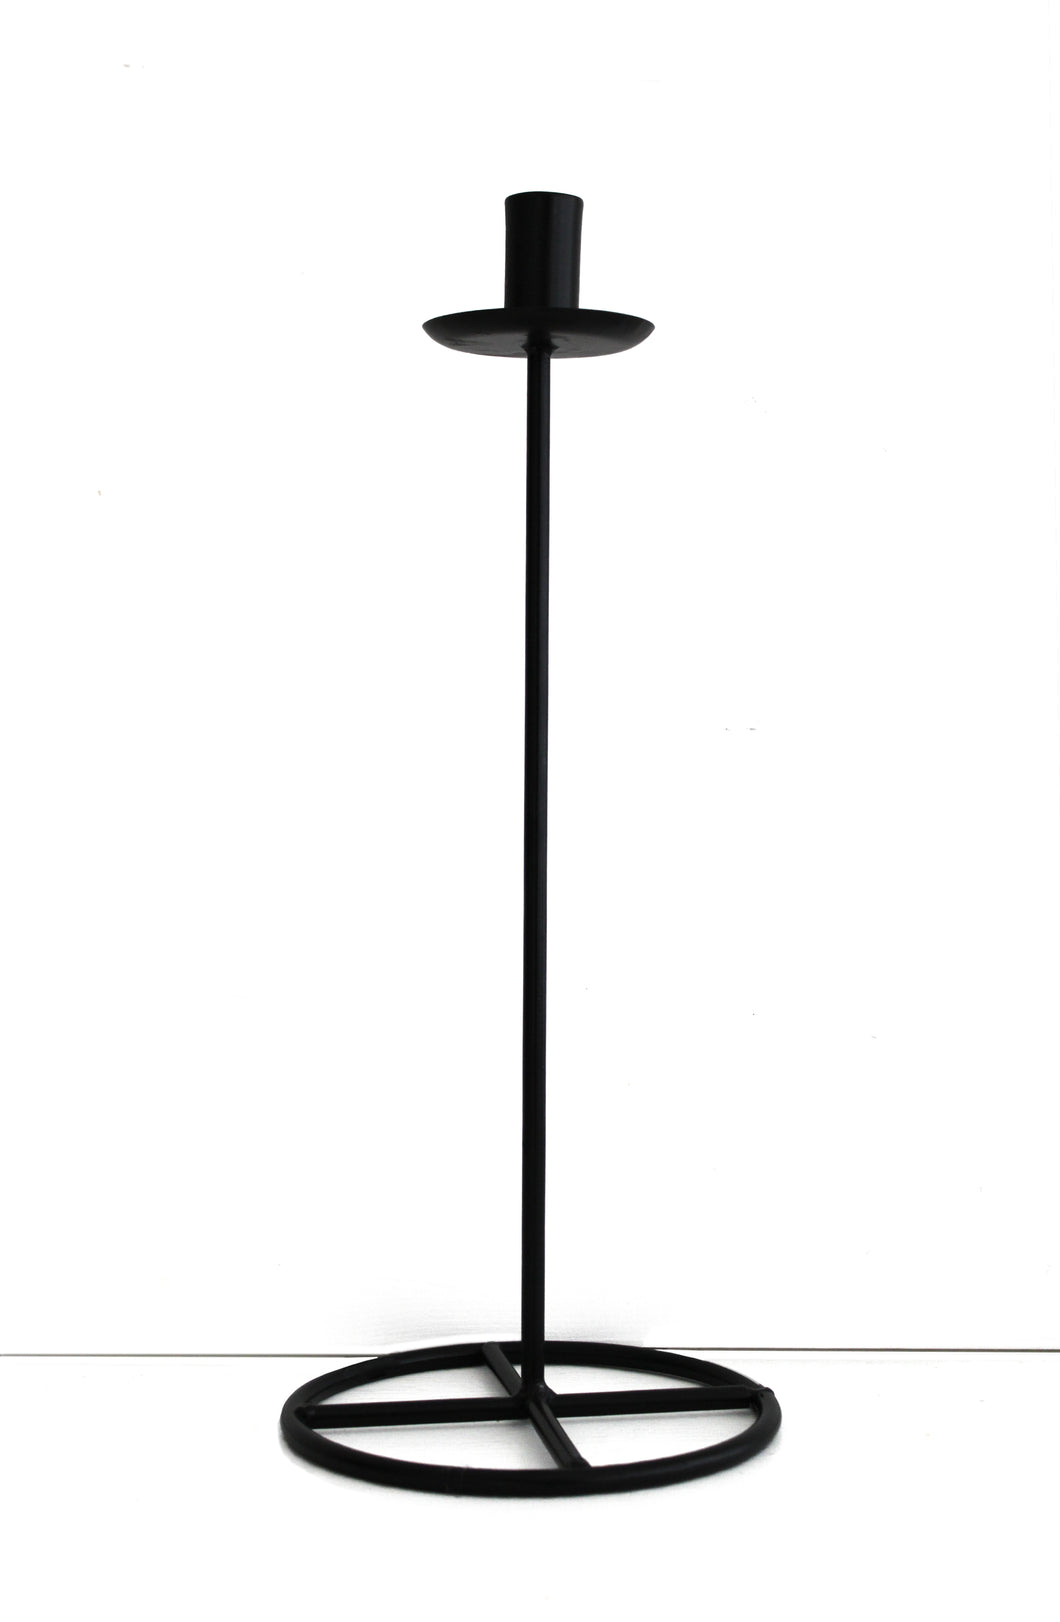 Kerzenständer Clervaux aus Metall, Farbe Schwarz, Höhe 42 cm, Durchmesser Kerzenfassung 2,5 cm